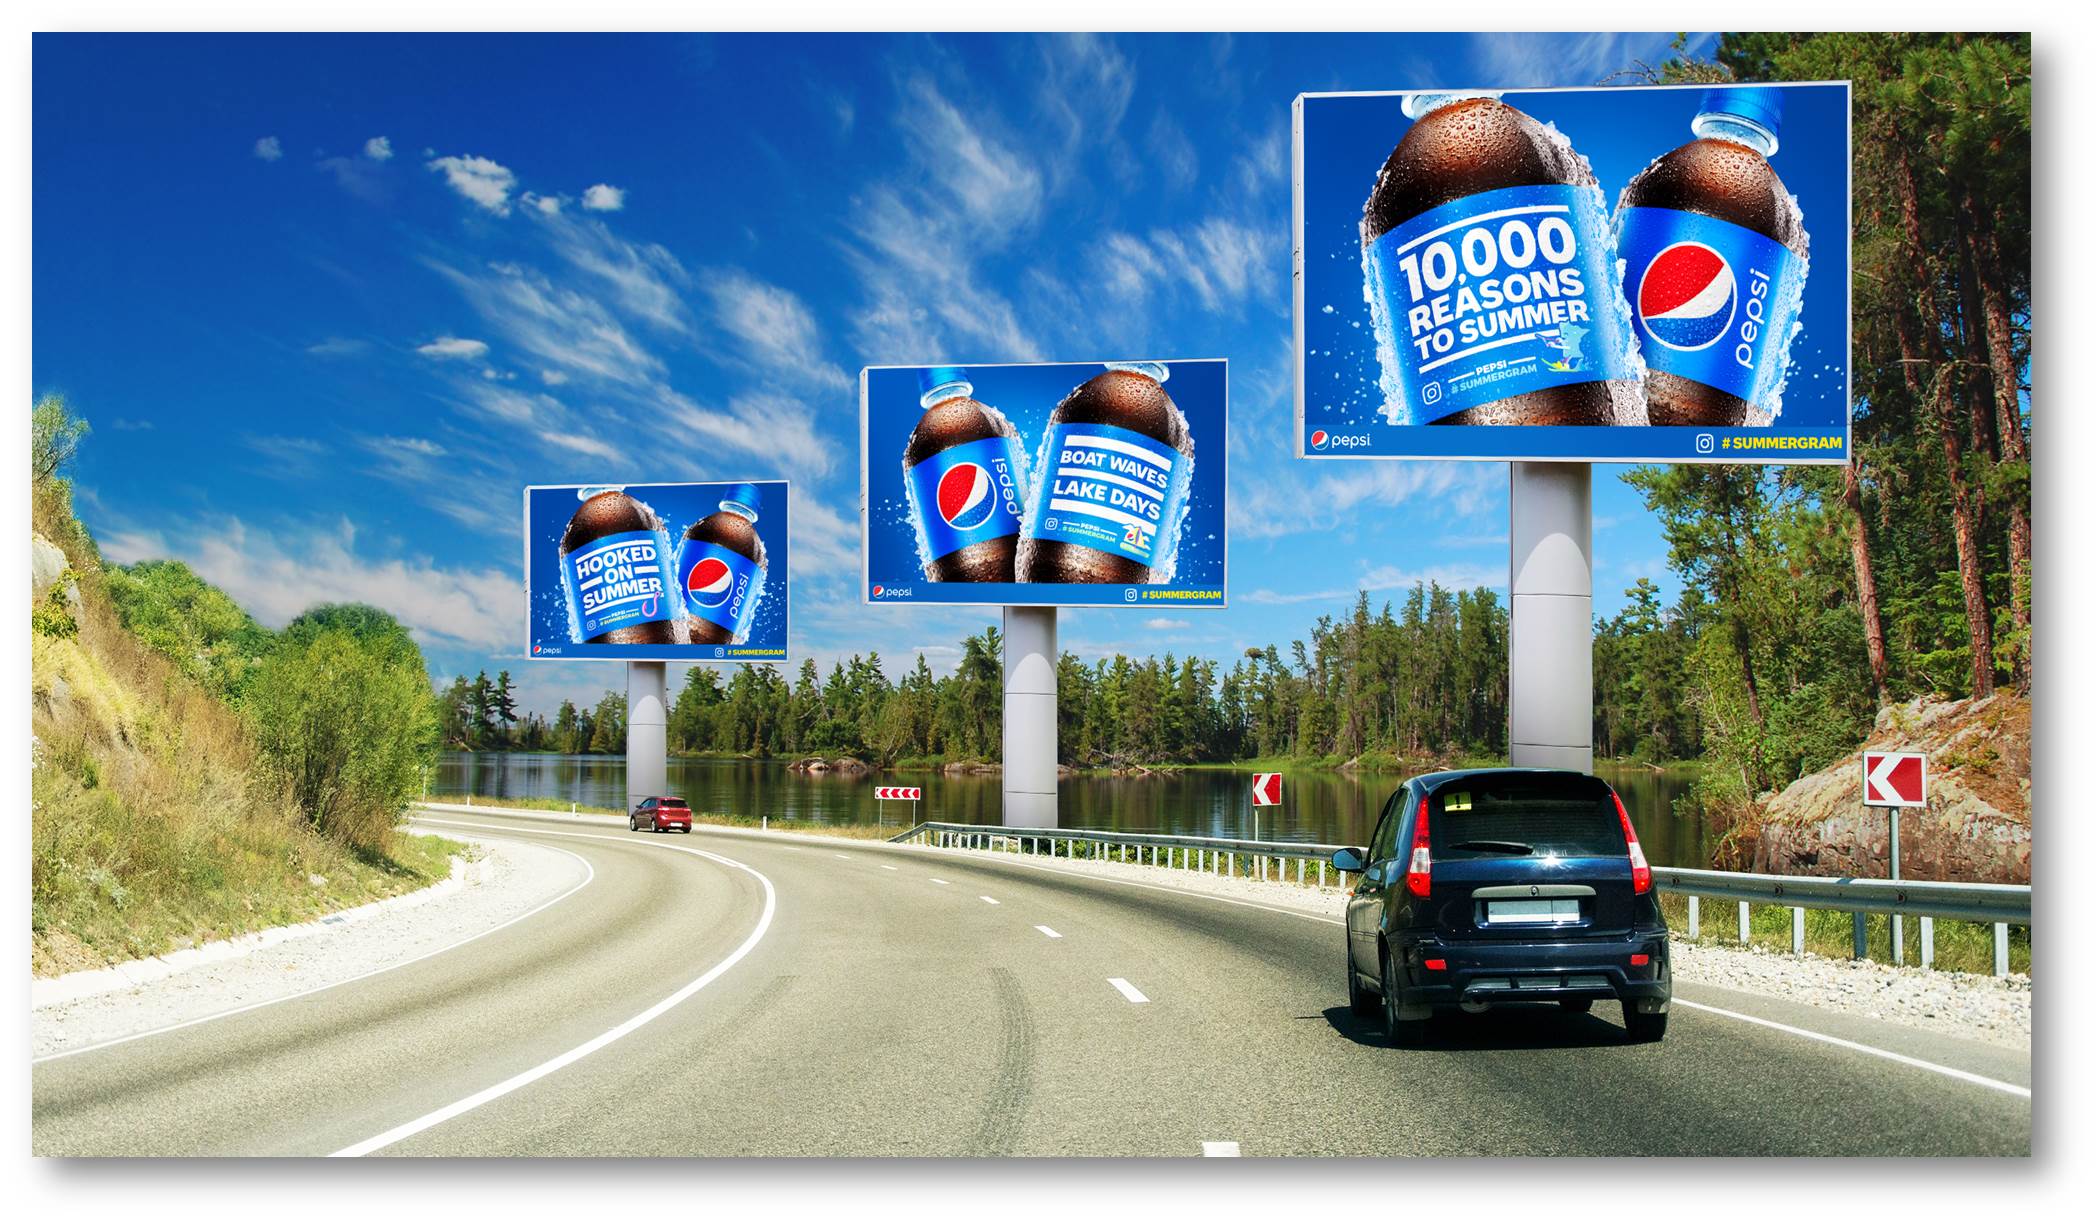 Pepsi #Summergram on Billboards